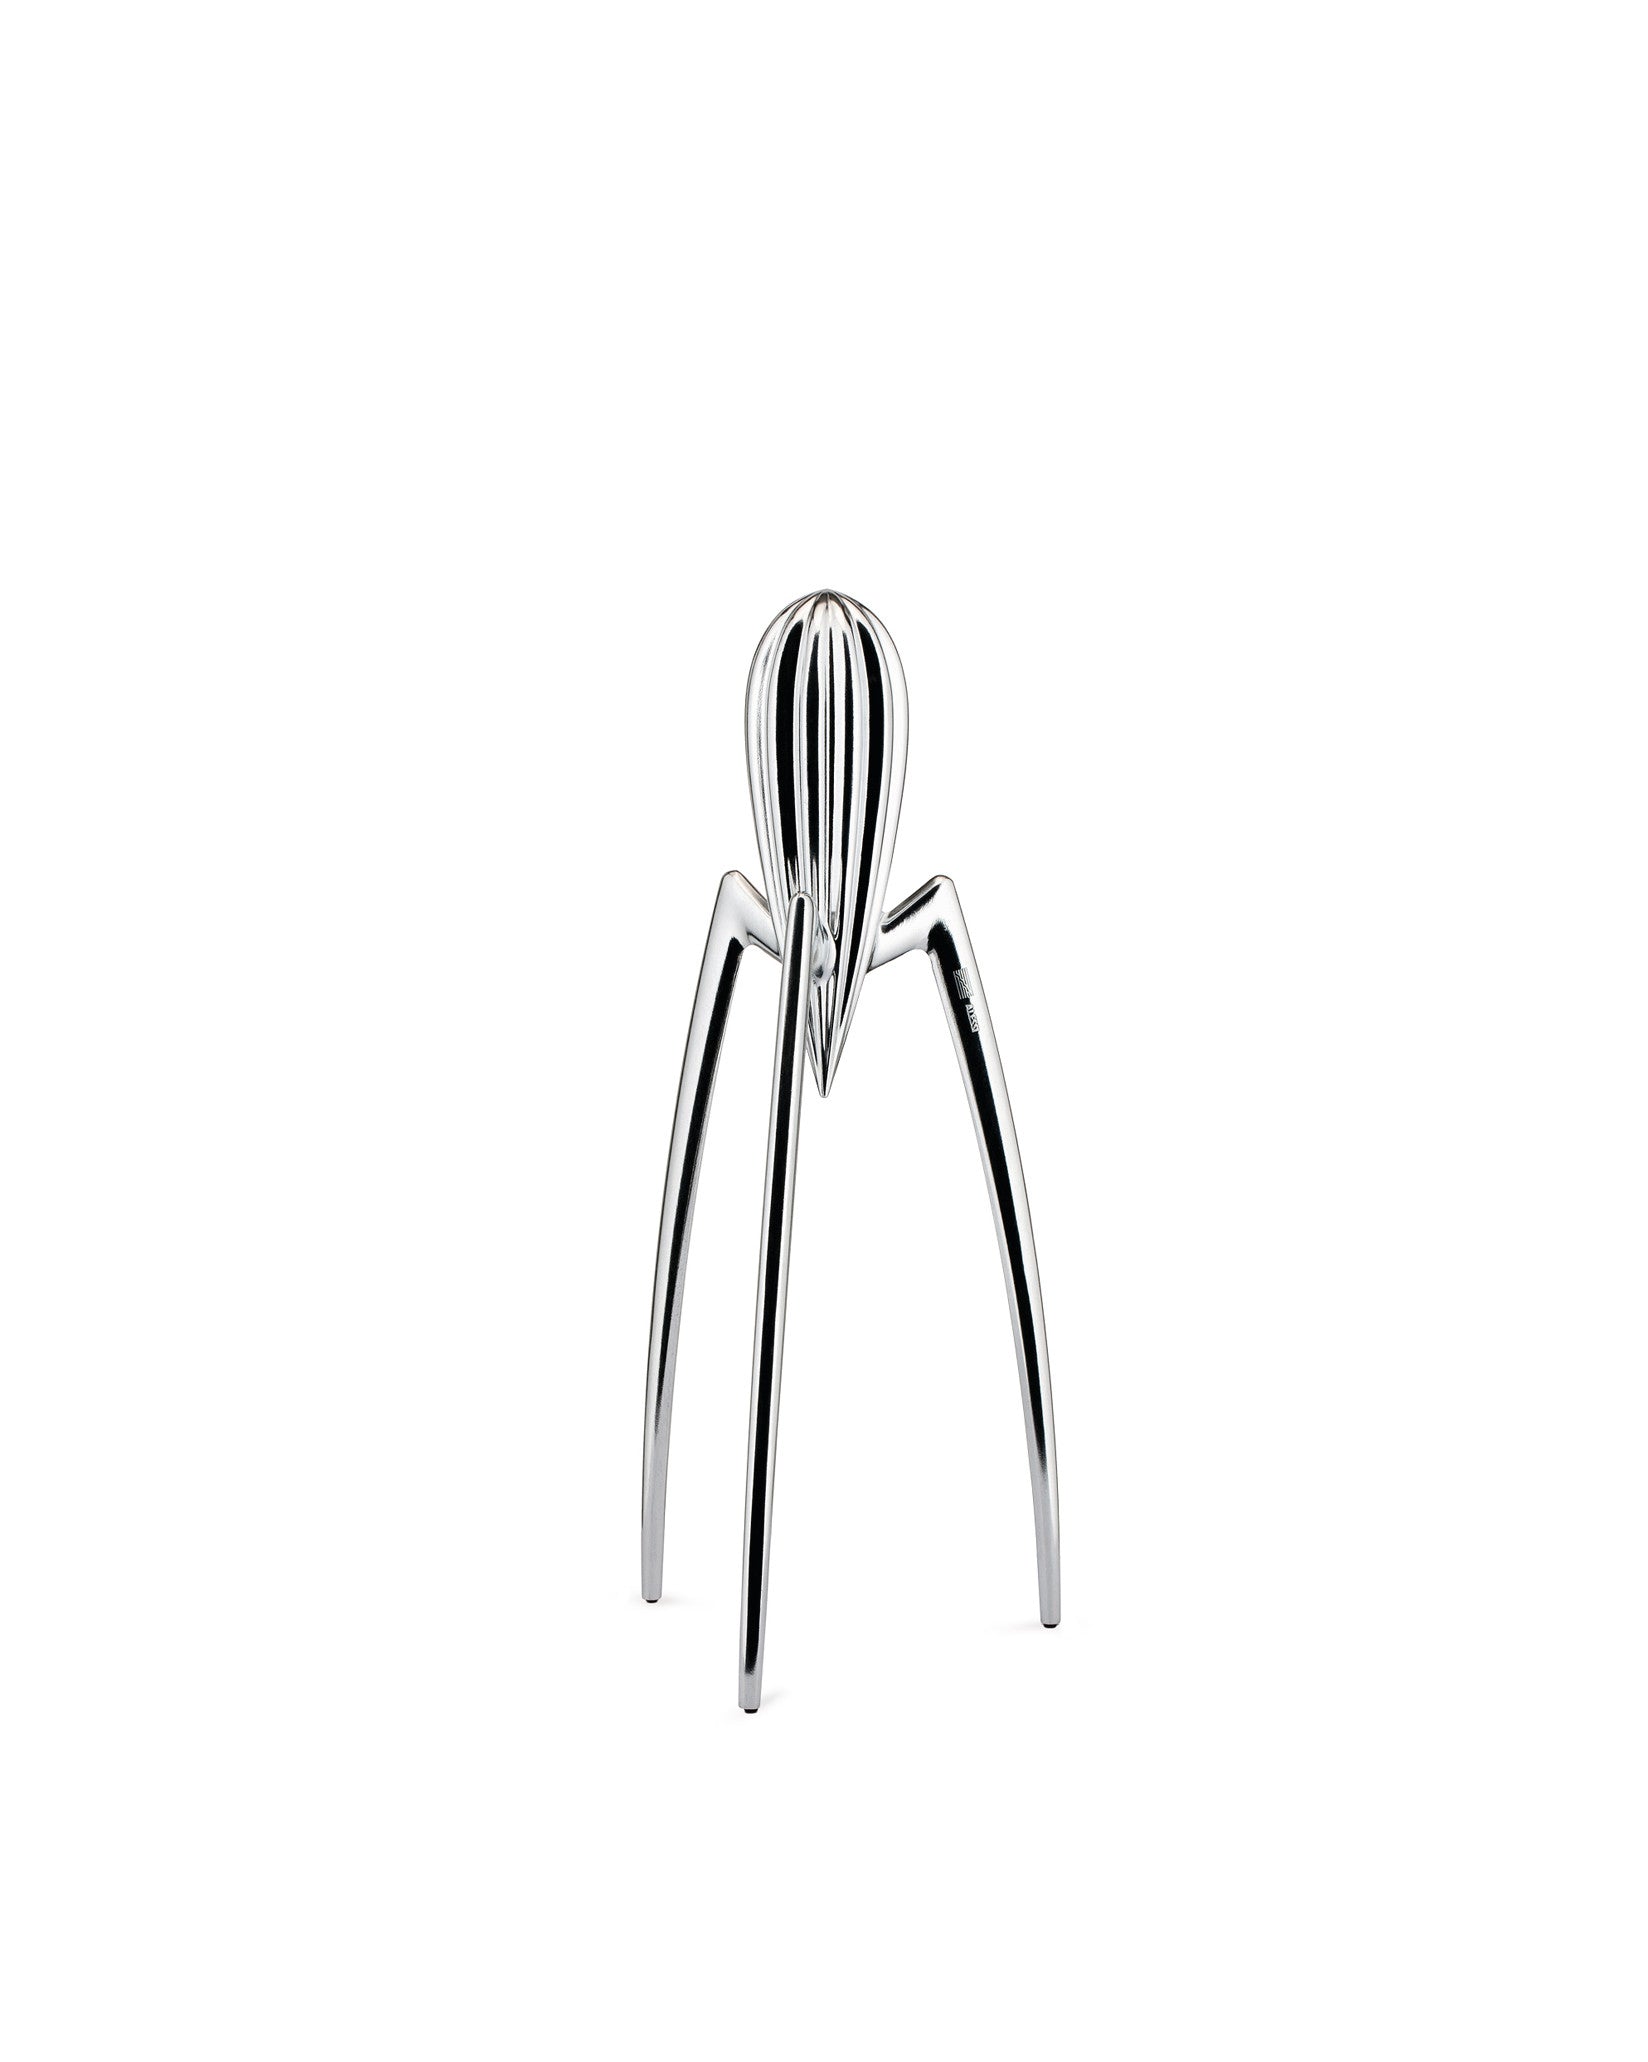 Die berühmteste Zitruspresse der Welt, die von Philippe Starck entworfene Alessi Juicy Salif Citrus Squeezer, ist eine Ikone der Küchengeräte. Dreibeiniges Design aus poliertem Aluminium